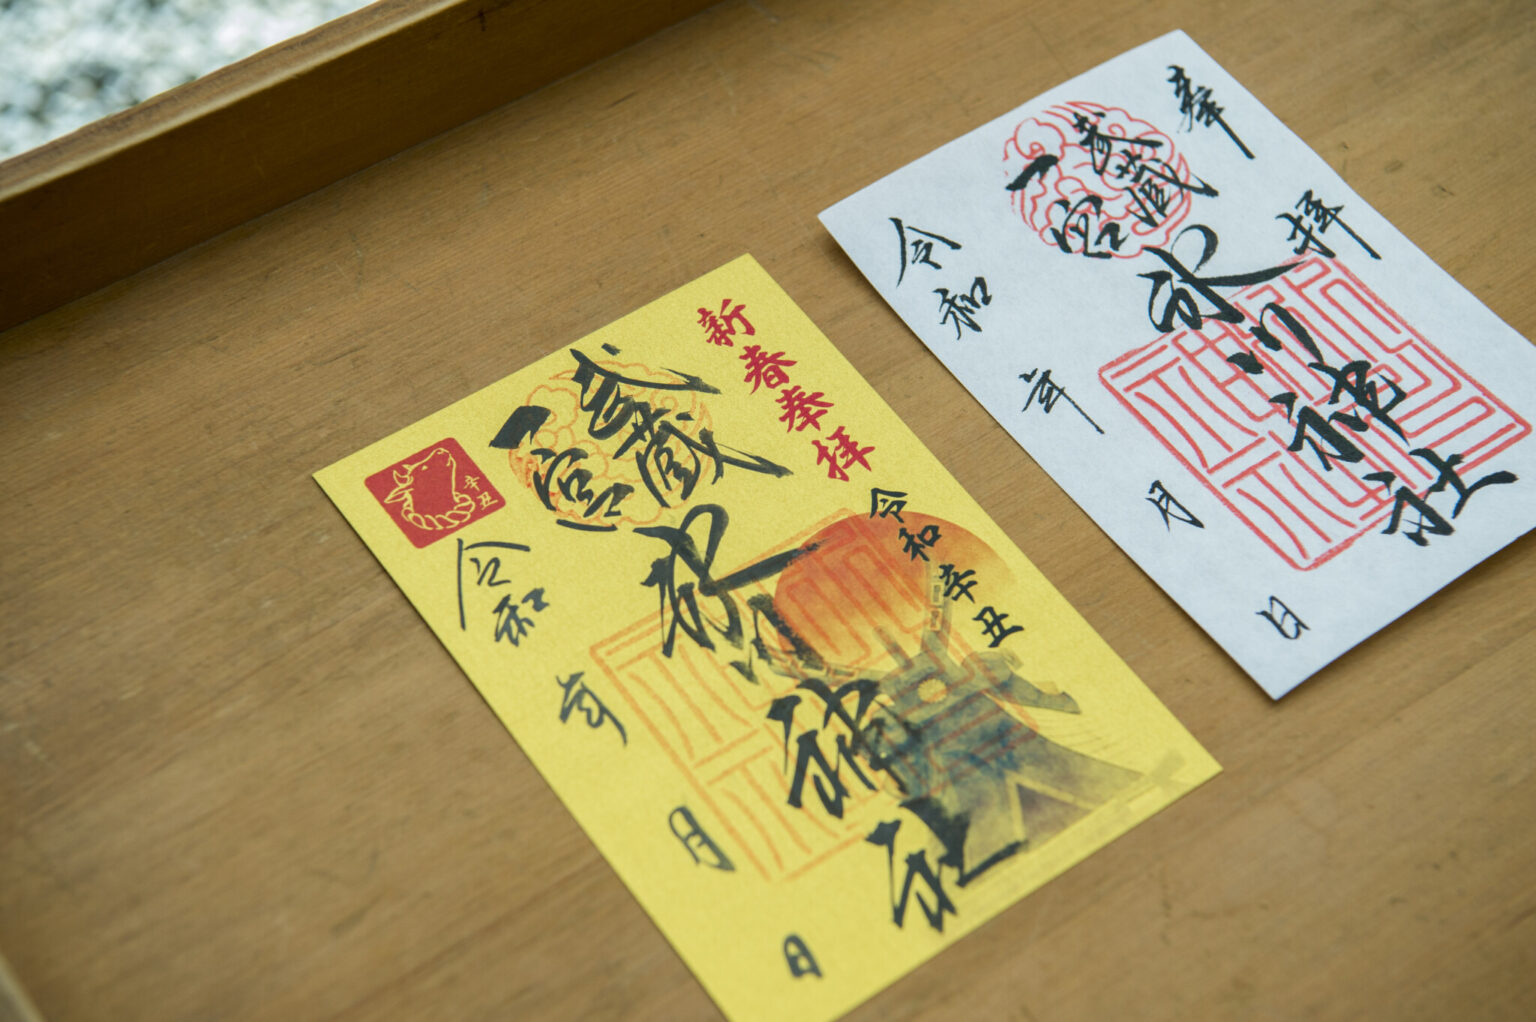 「武蔵一宮」の墨書きが入った氷川神社の御朱印（500円）。正月期間には新春奉拝の特別な御朱印（写真左）をいただくことができる。